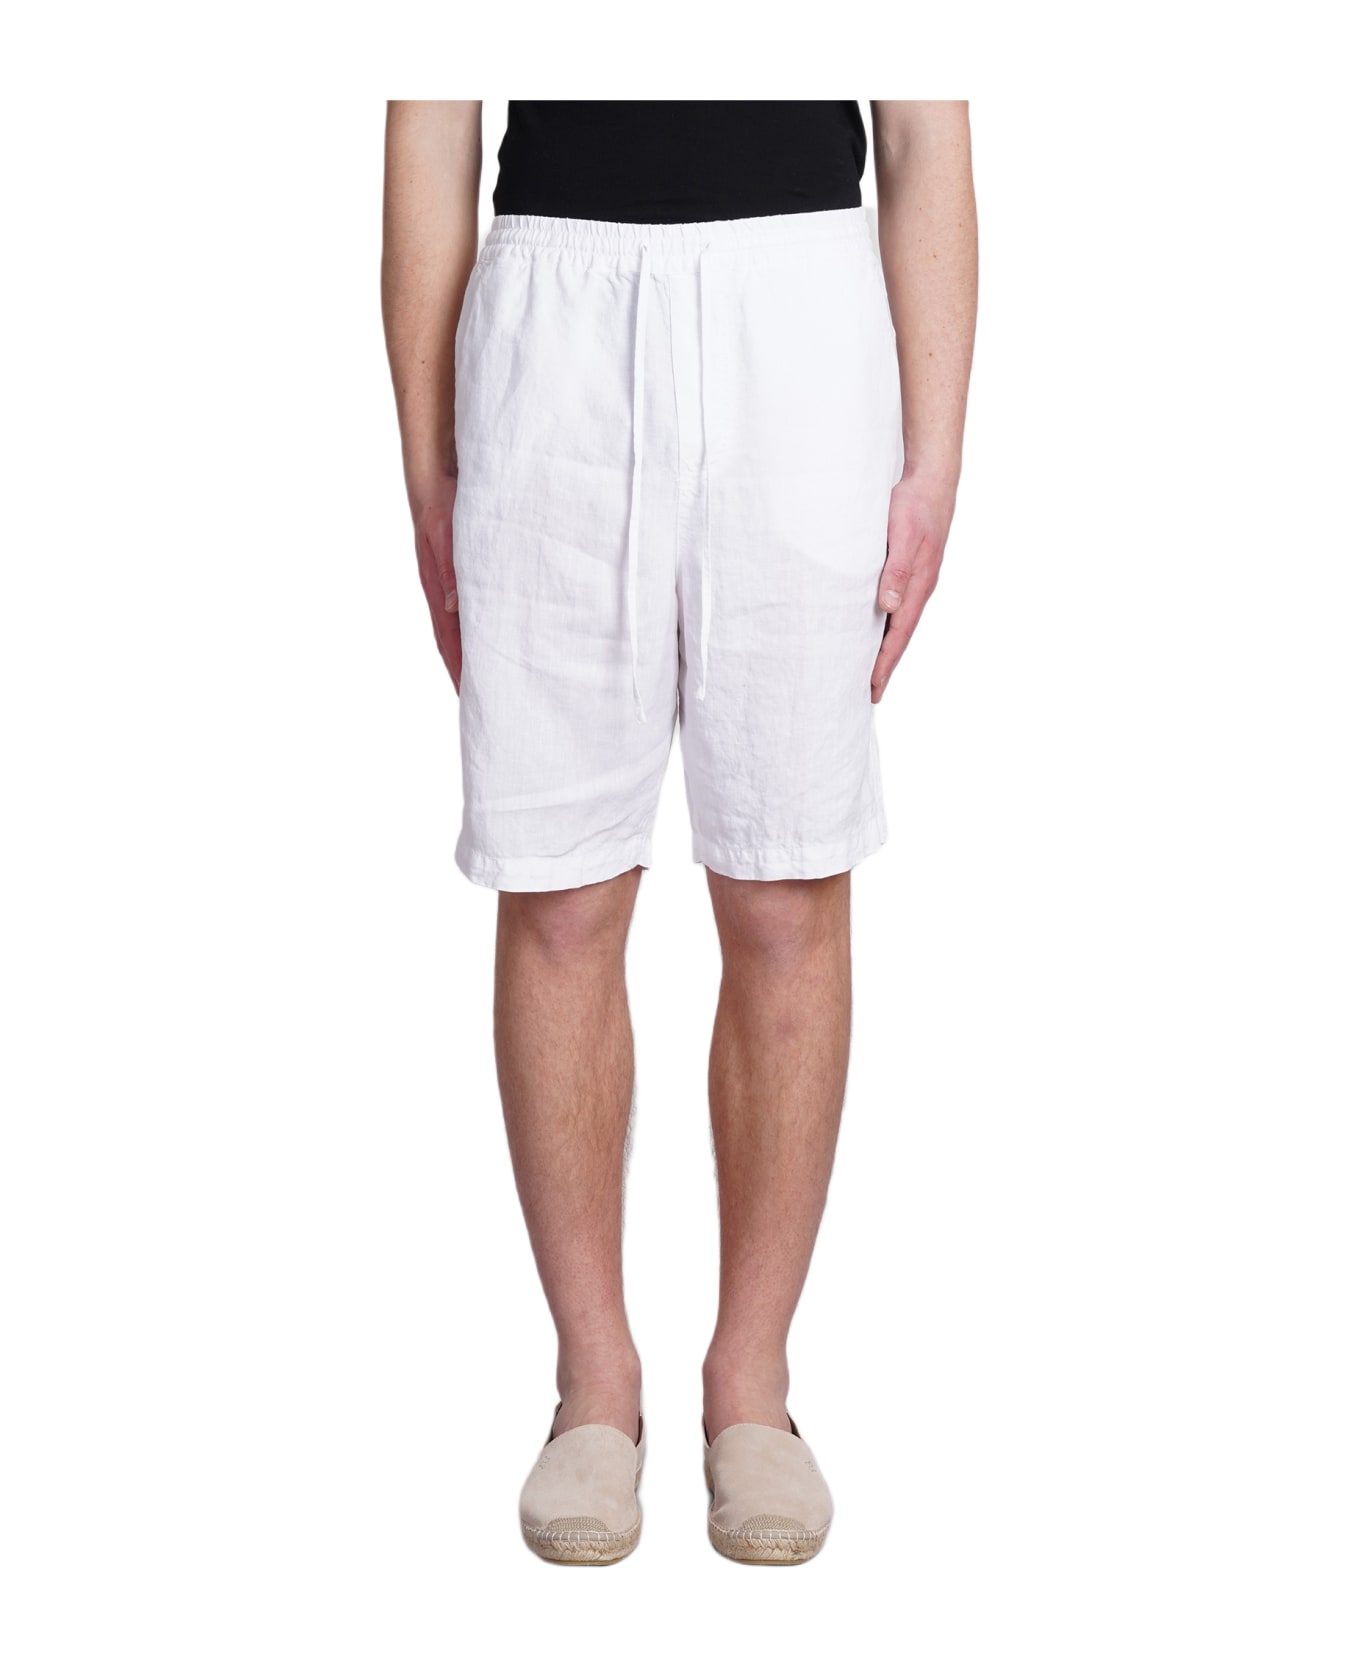 120% Lino Shorts In White Linen - white ショートパンツ